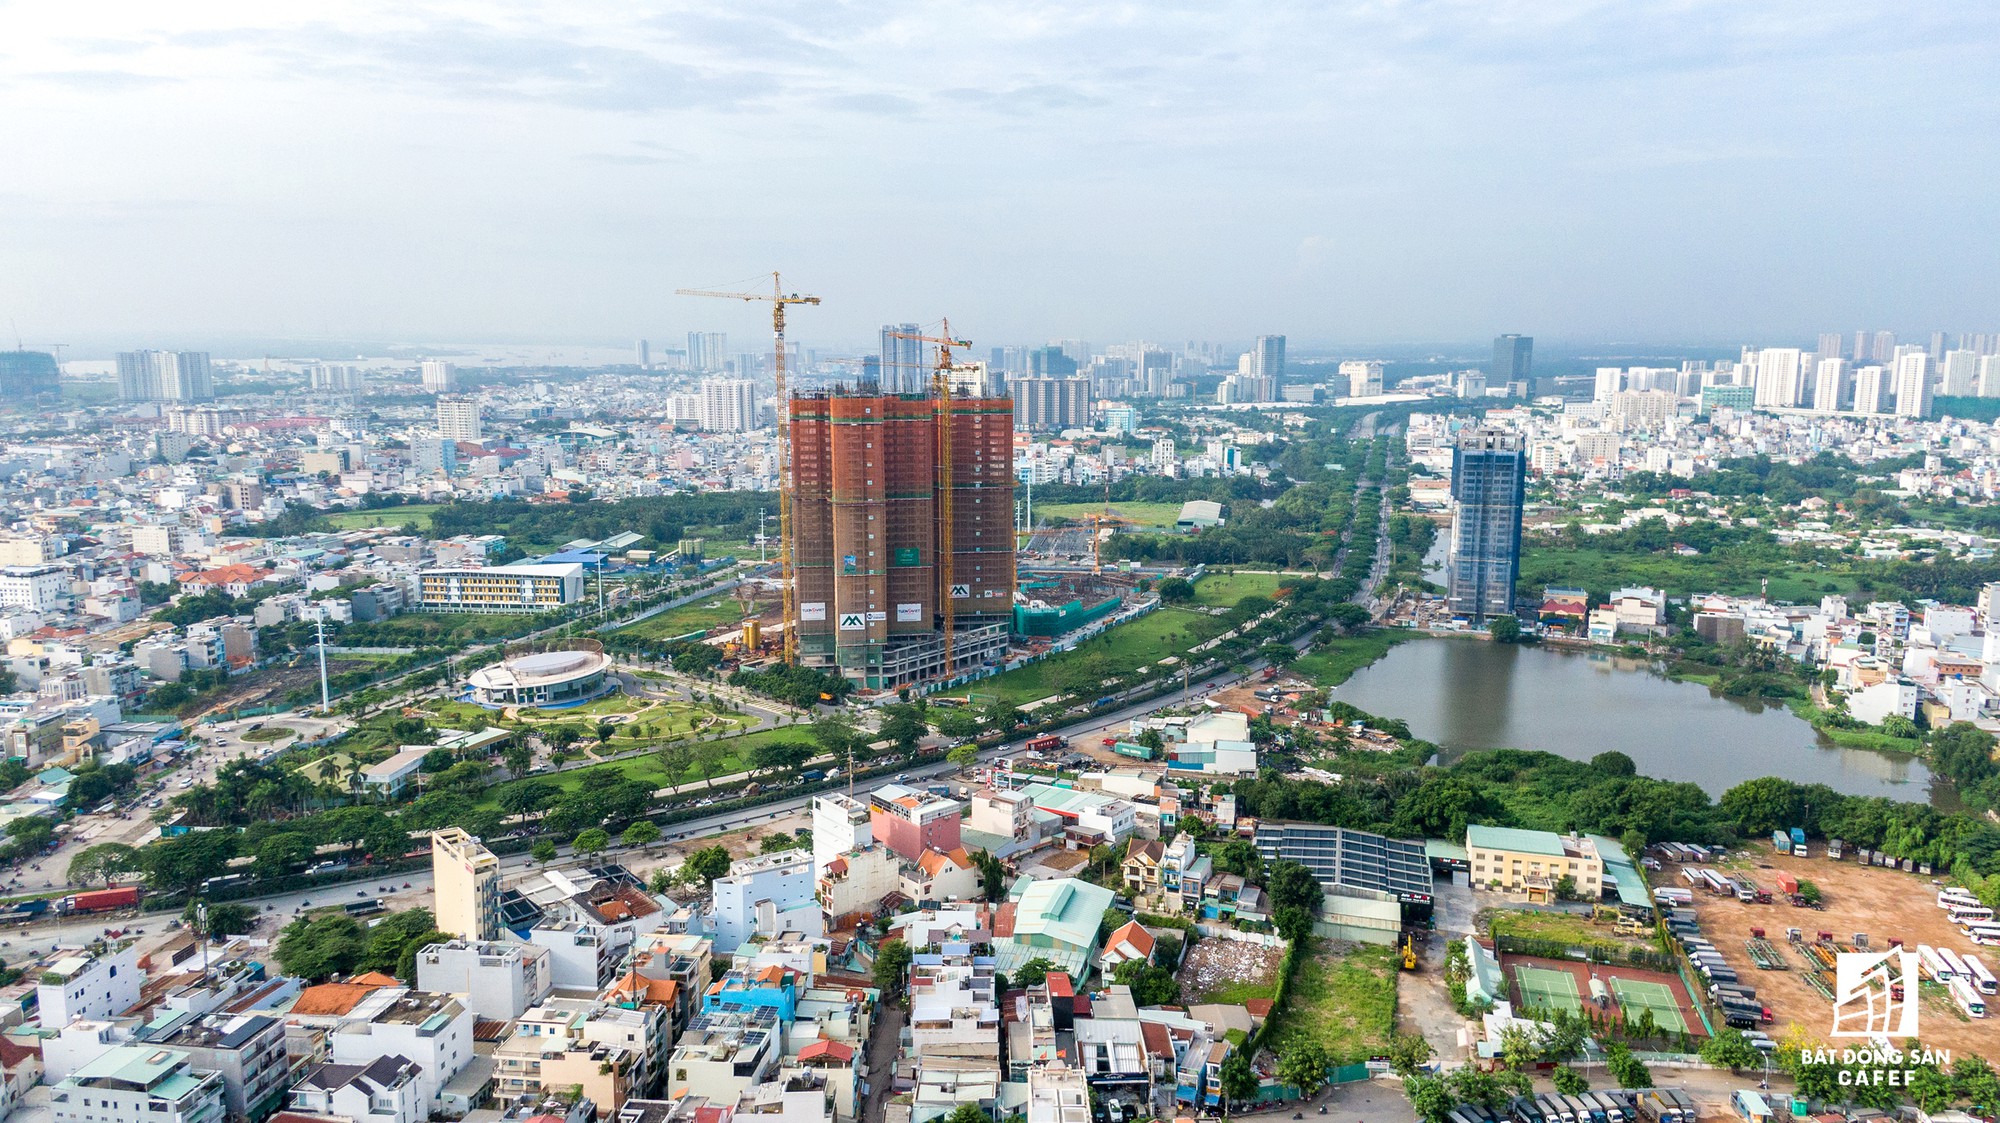 Toàn cảnh đại lộ tỷ đô đã tạo nên một thị trường bất động sản rất riêng cho khu Nam Sài Gòn - Ảnh 16.